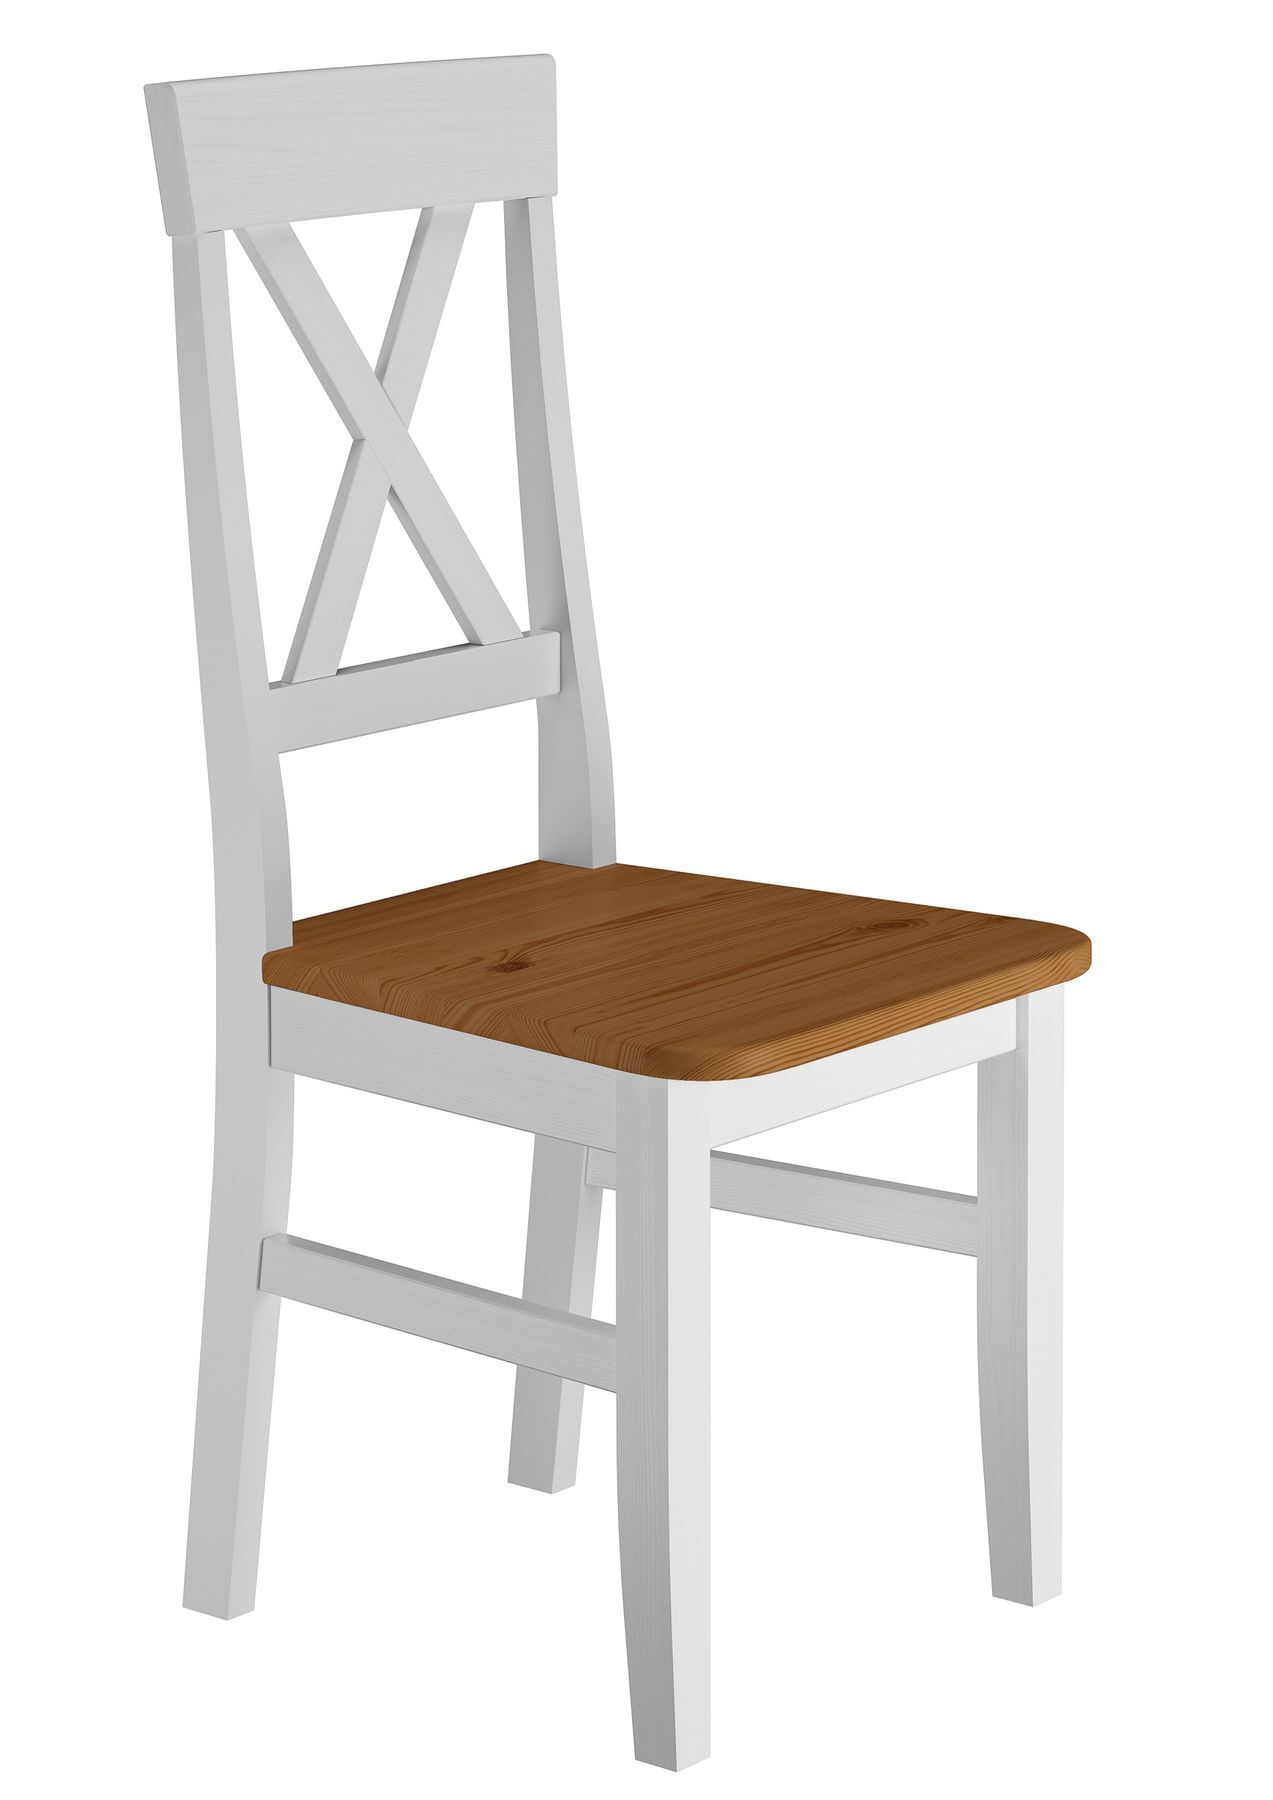 Stuhl aus massivem Kiefernholz weiß lasiert mit dunkler Sitzfläche und schlichtem Kreuz in der interessant geschwungenen hohen Lehne